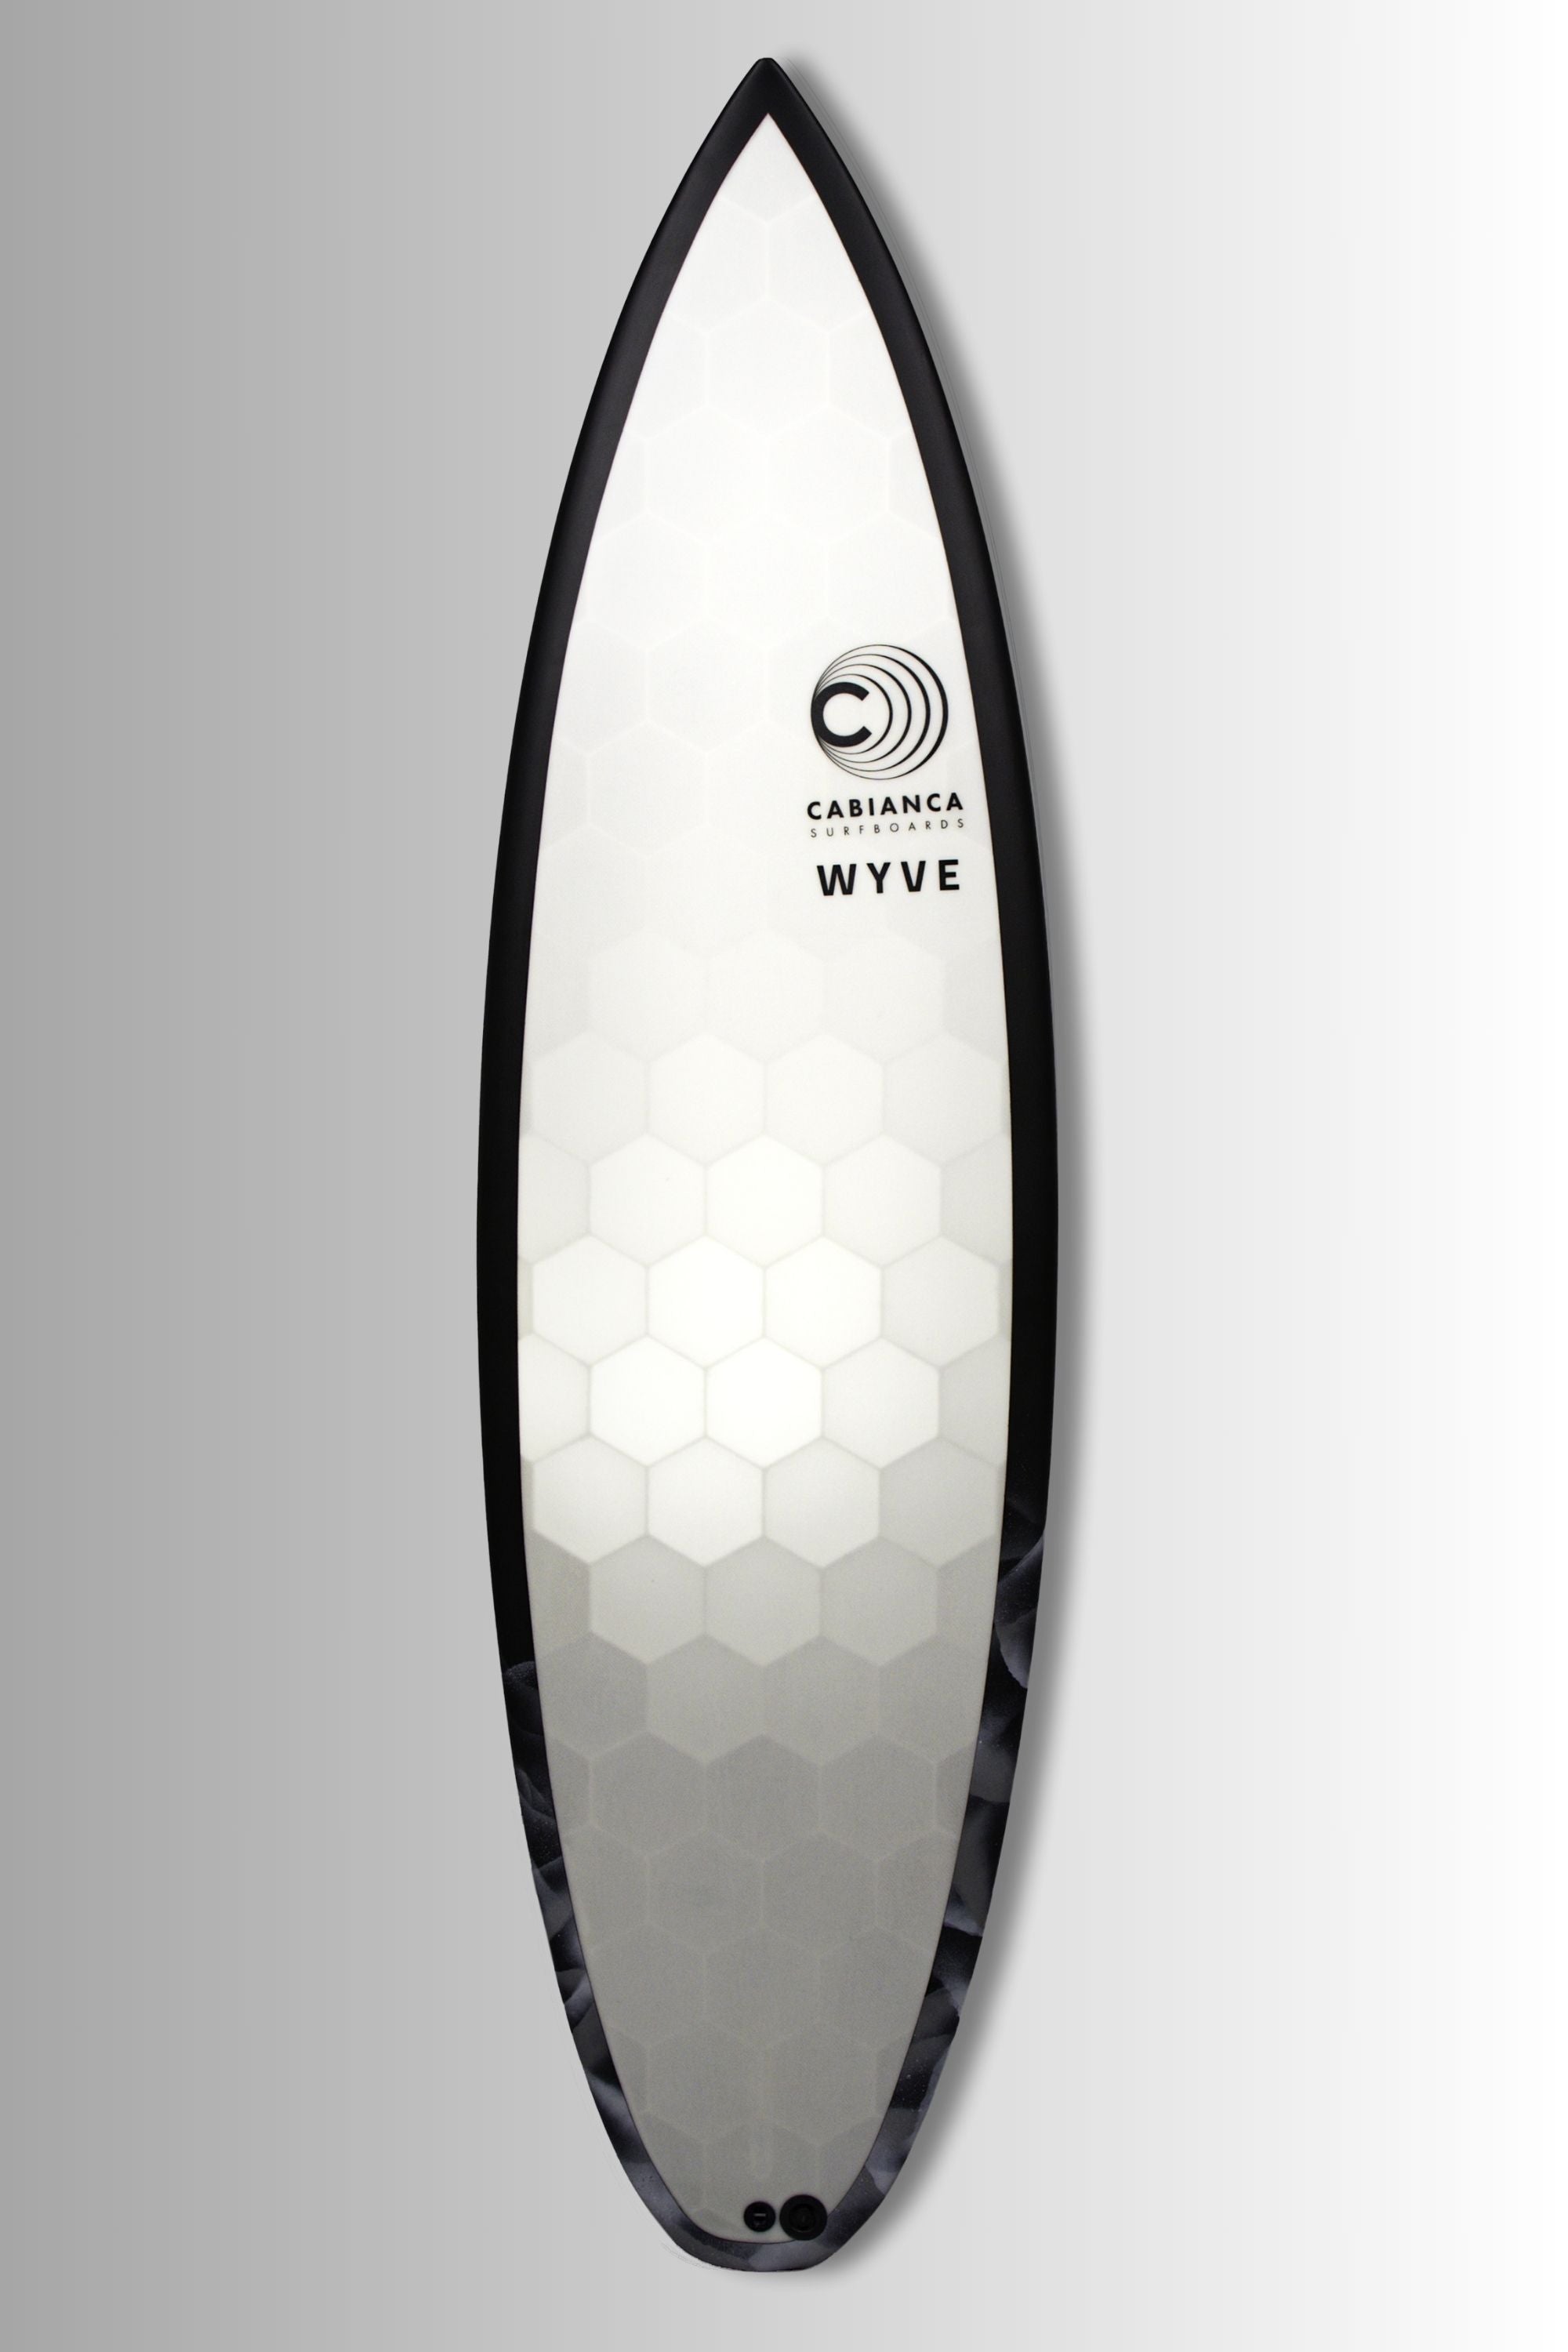 Planche de surf performante avec un shape de shortboard  Wyve X Cabianca DFK 2.0 planche utilisée par Gabriel Medina